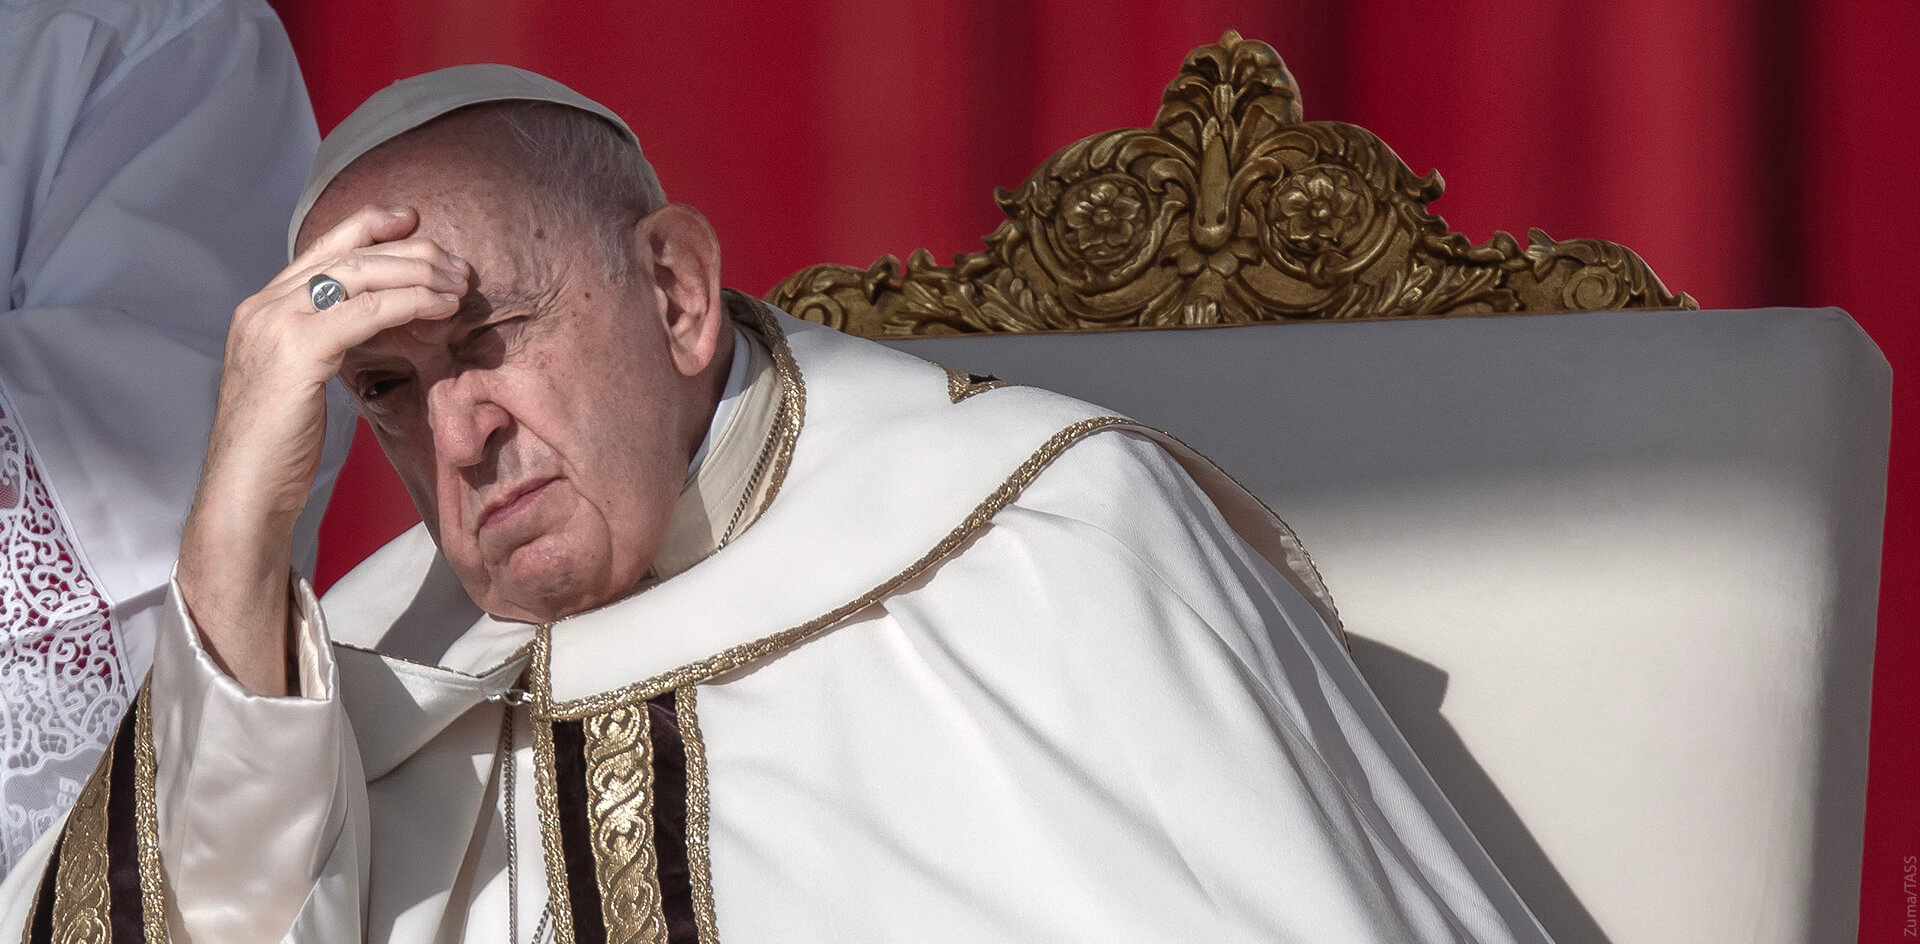 Прогрессист и глобалист: папа римский фраппирует паству